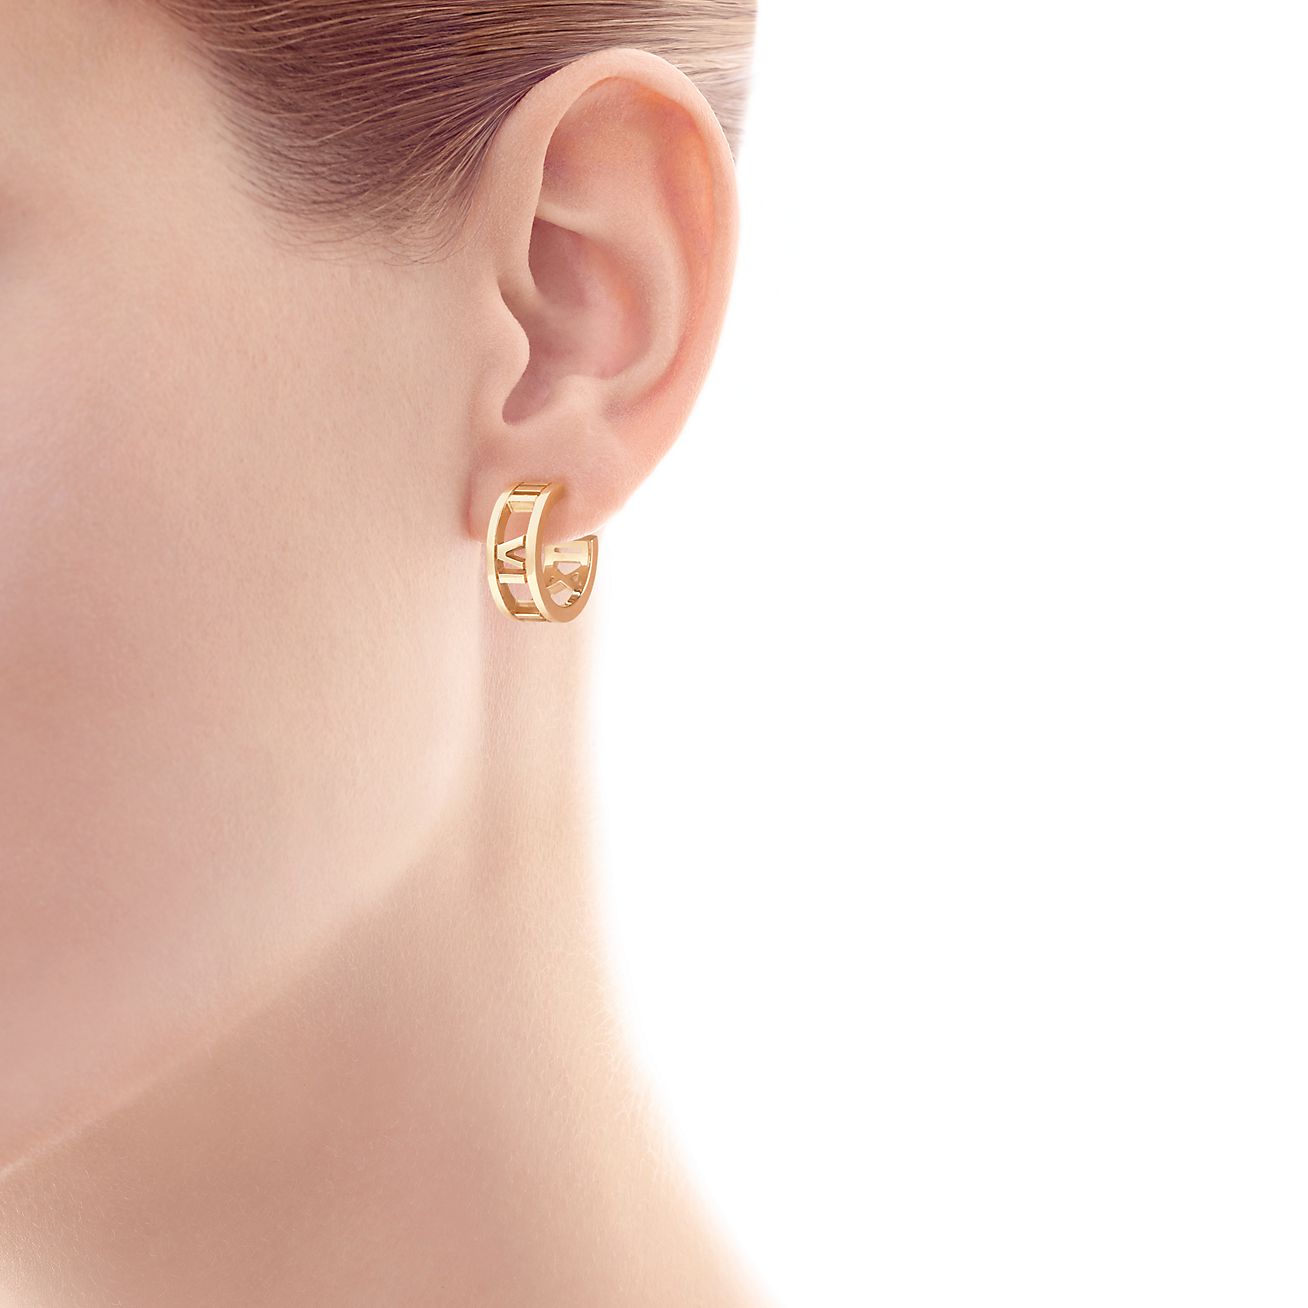 Atlas® hoop earrings in 18k gold, mini 